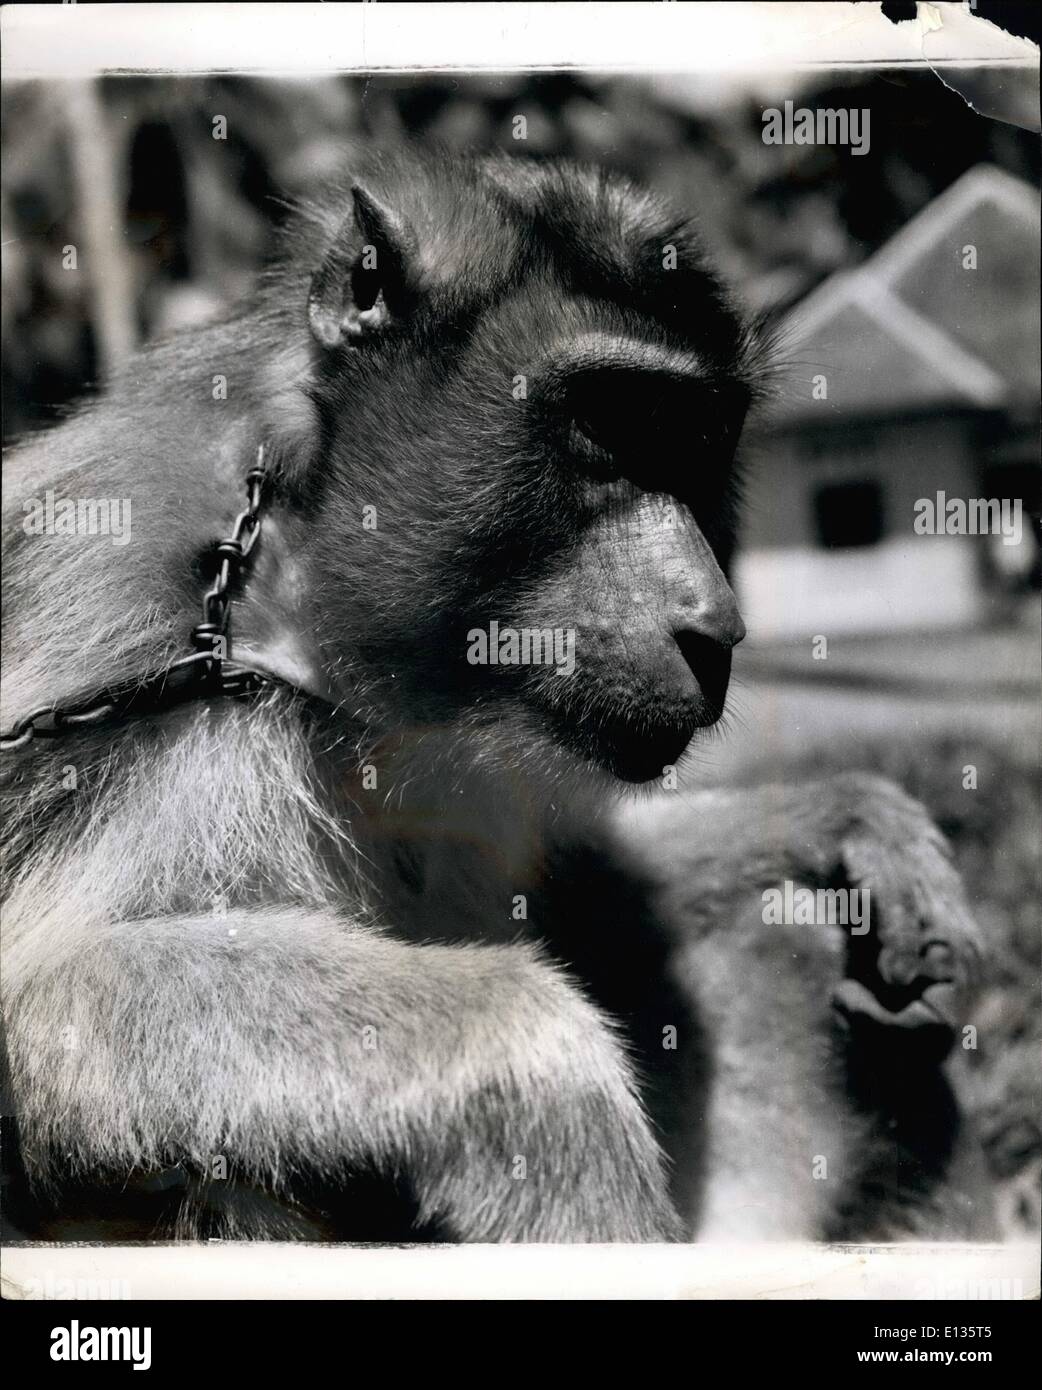 28. Februar 2012 - Madame Affe Werke für ihr Leben In Sumatra: Als A Coconut Sammler sie verdient A menschliche Arbeitskraft Lohn: Sumatra ist eine Insel voller Affen in allen Formen, Farben und Größen. Die Eingeborenen haben lange Vorteil davon genommen und weiblichen Gefangene Affen täglich nützlich für ihren Unterhalt arbeiten zu trainieren. Beste (die einzige in der Tat) Aufgabe eine Affe tun kann ist, verwenden Sie seine Fähigkeiten in Bäume zu klettern, um die Kokosnüsse zu pflücken, seine für ihre Kopra verkauft werden. Weibchen können nur für diese Arbeit versucht werden, da die Männchen der Spezies zu heftig ist Stockfoto